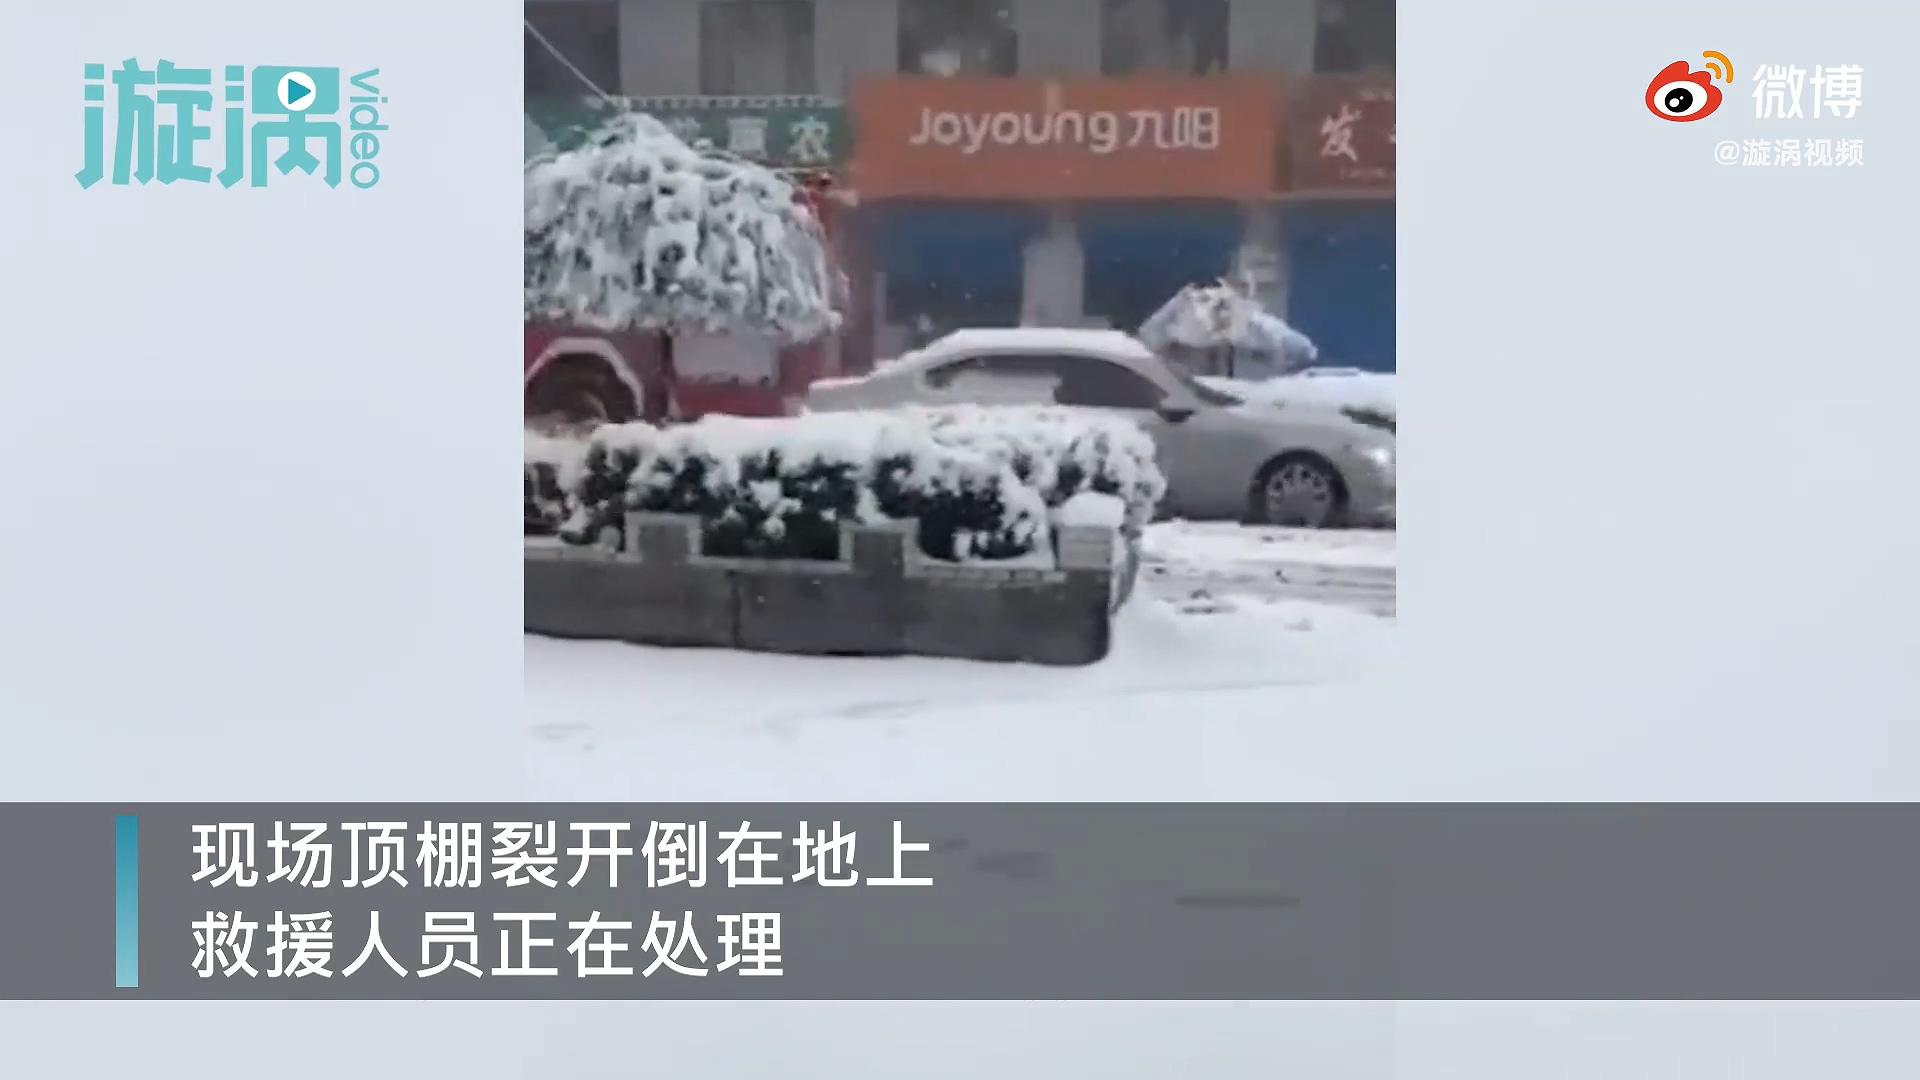 因大面积降雪 山西超市顶棚被暴雪压塌4人受伤 